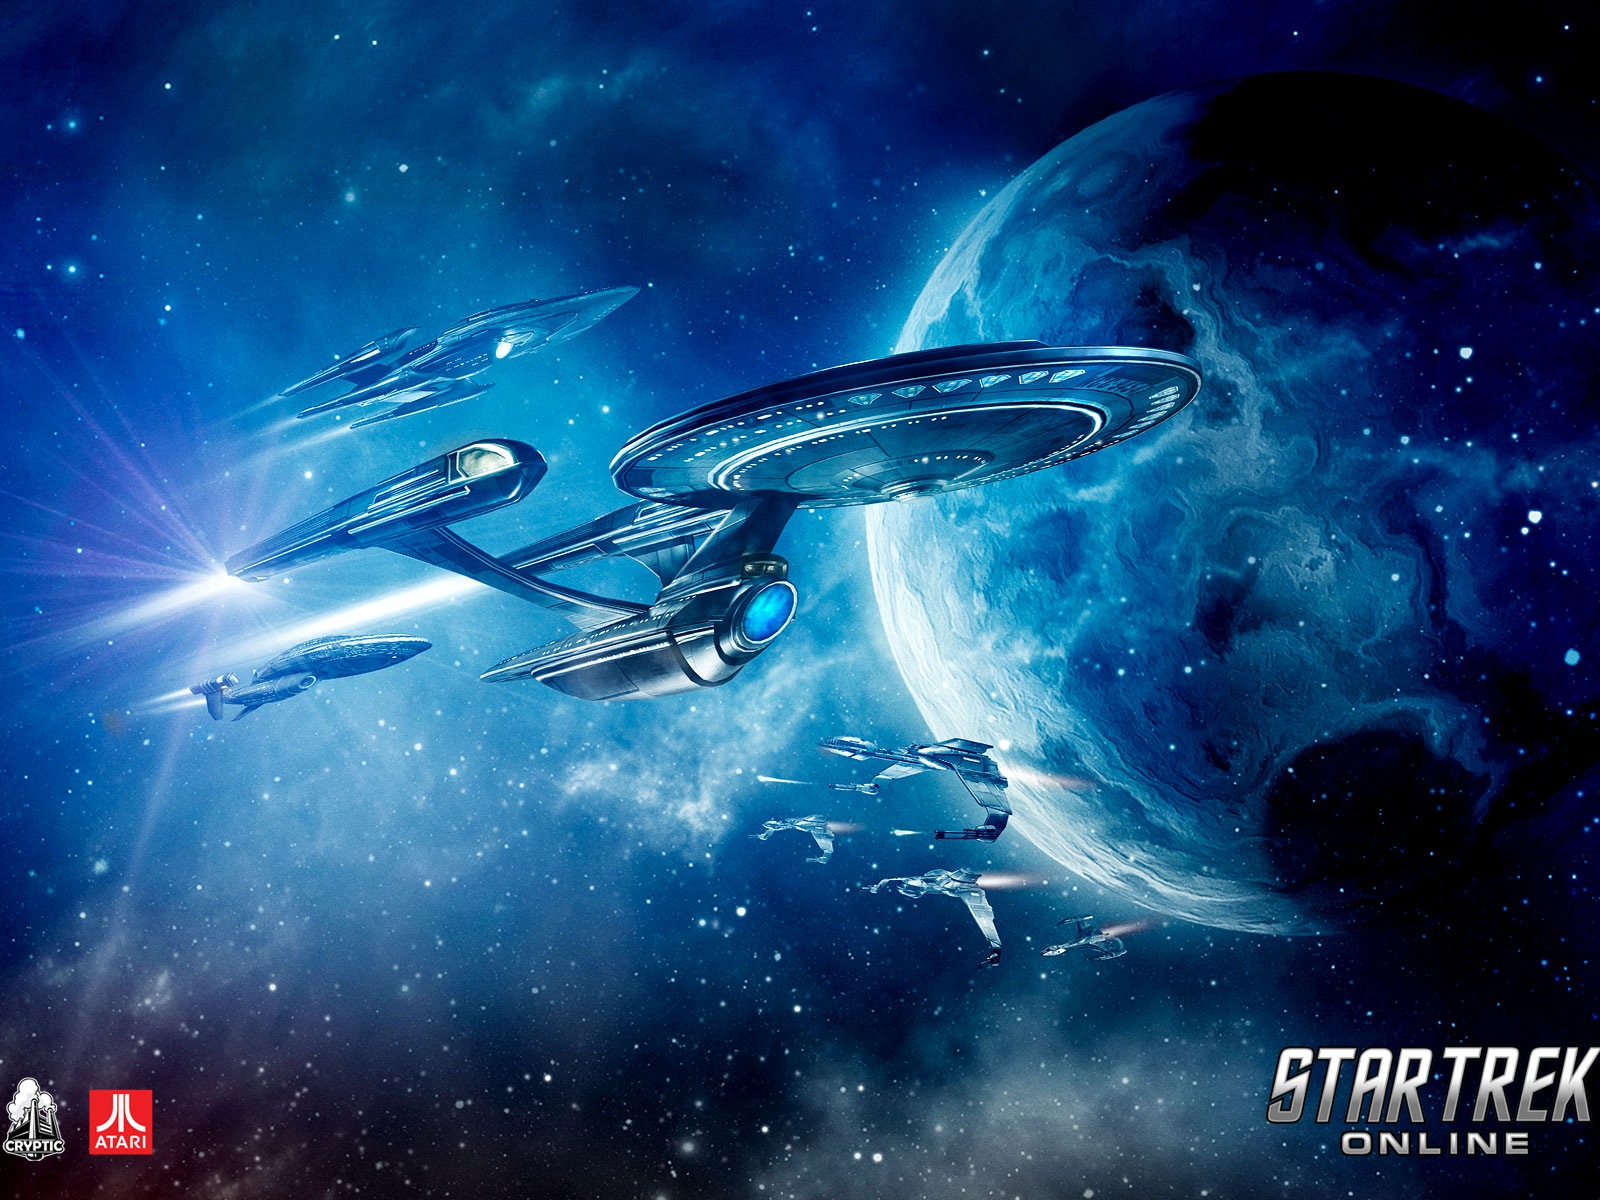 Star Trek Online 星际迷航在线 游戏高清壁纸1 - 1600x1200